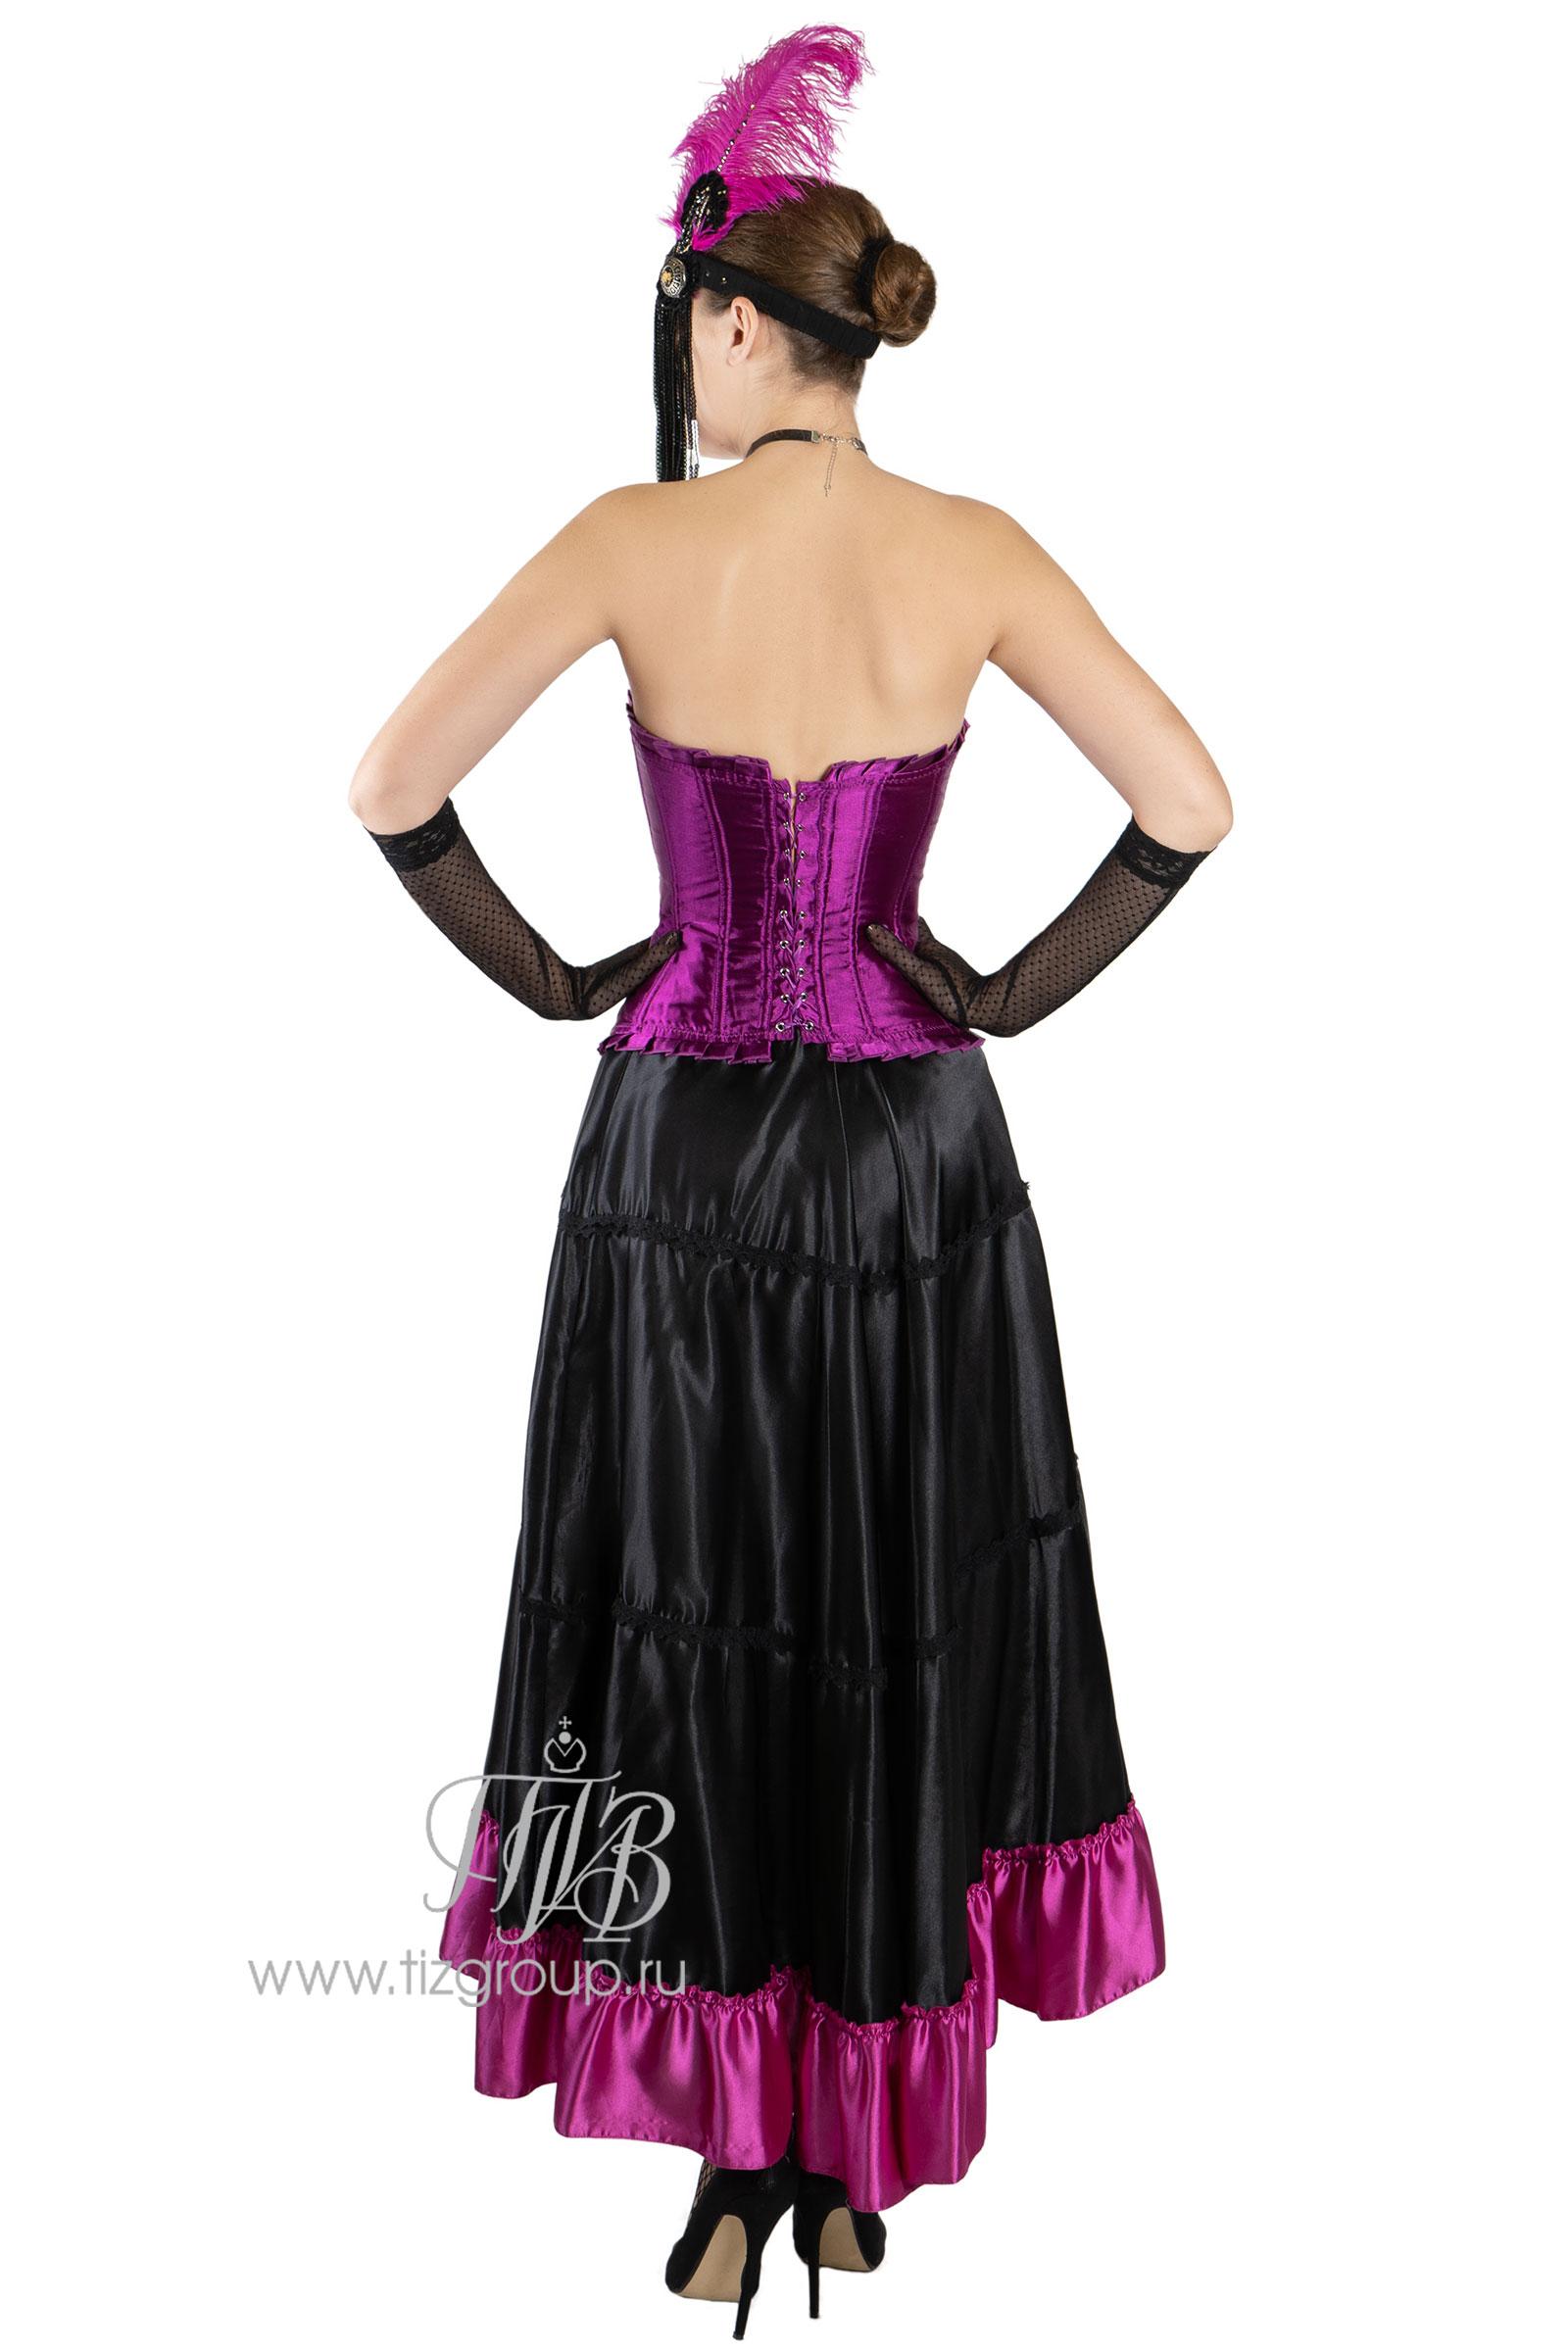 Daisy Corsets IS-D-22 Burlesque corset Size 3-4X